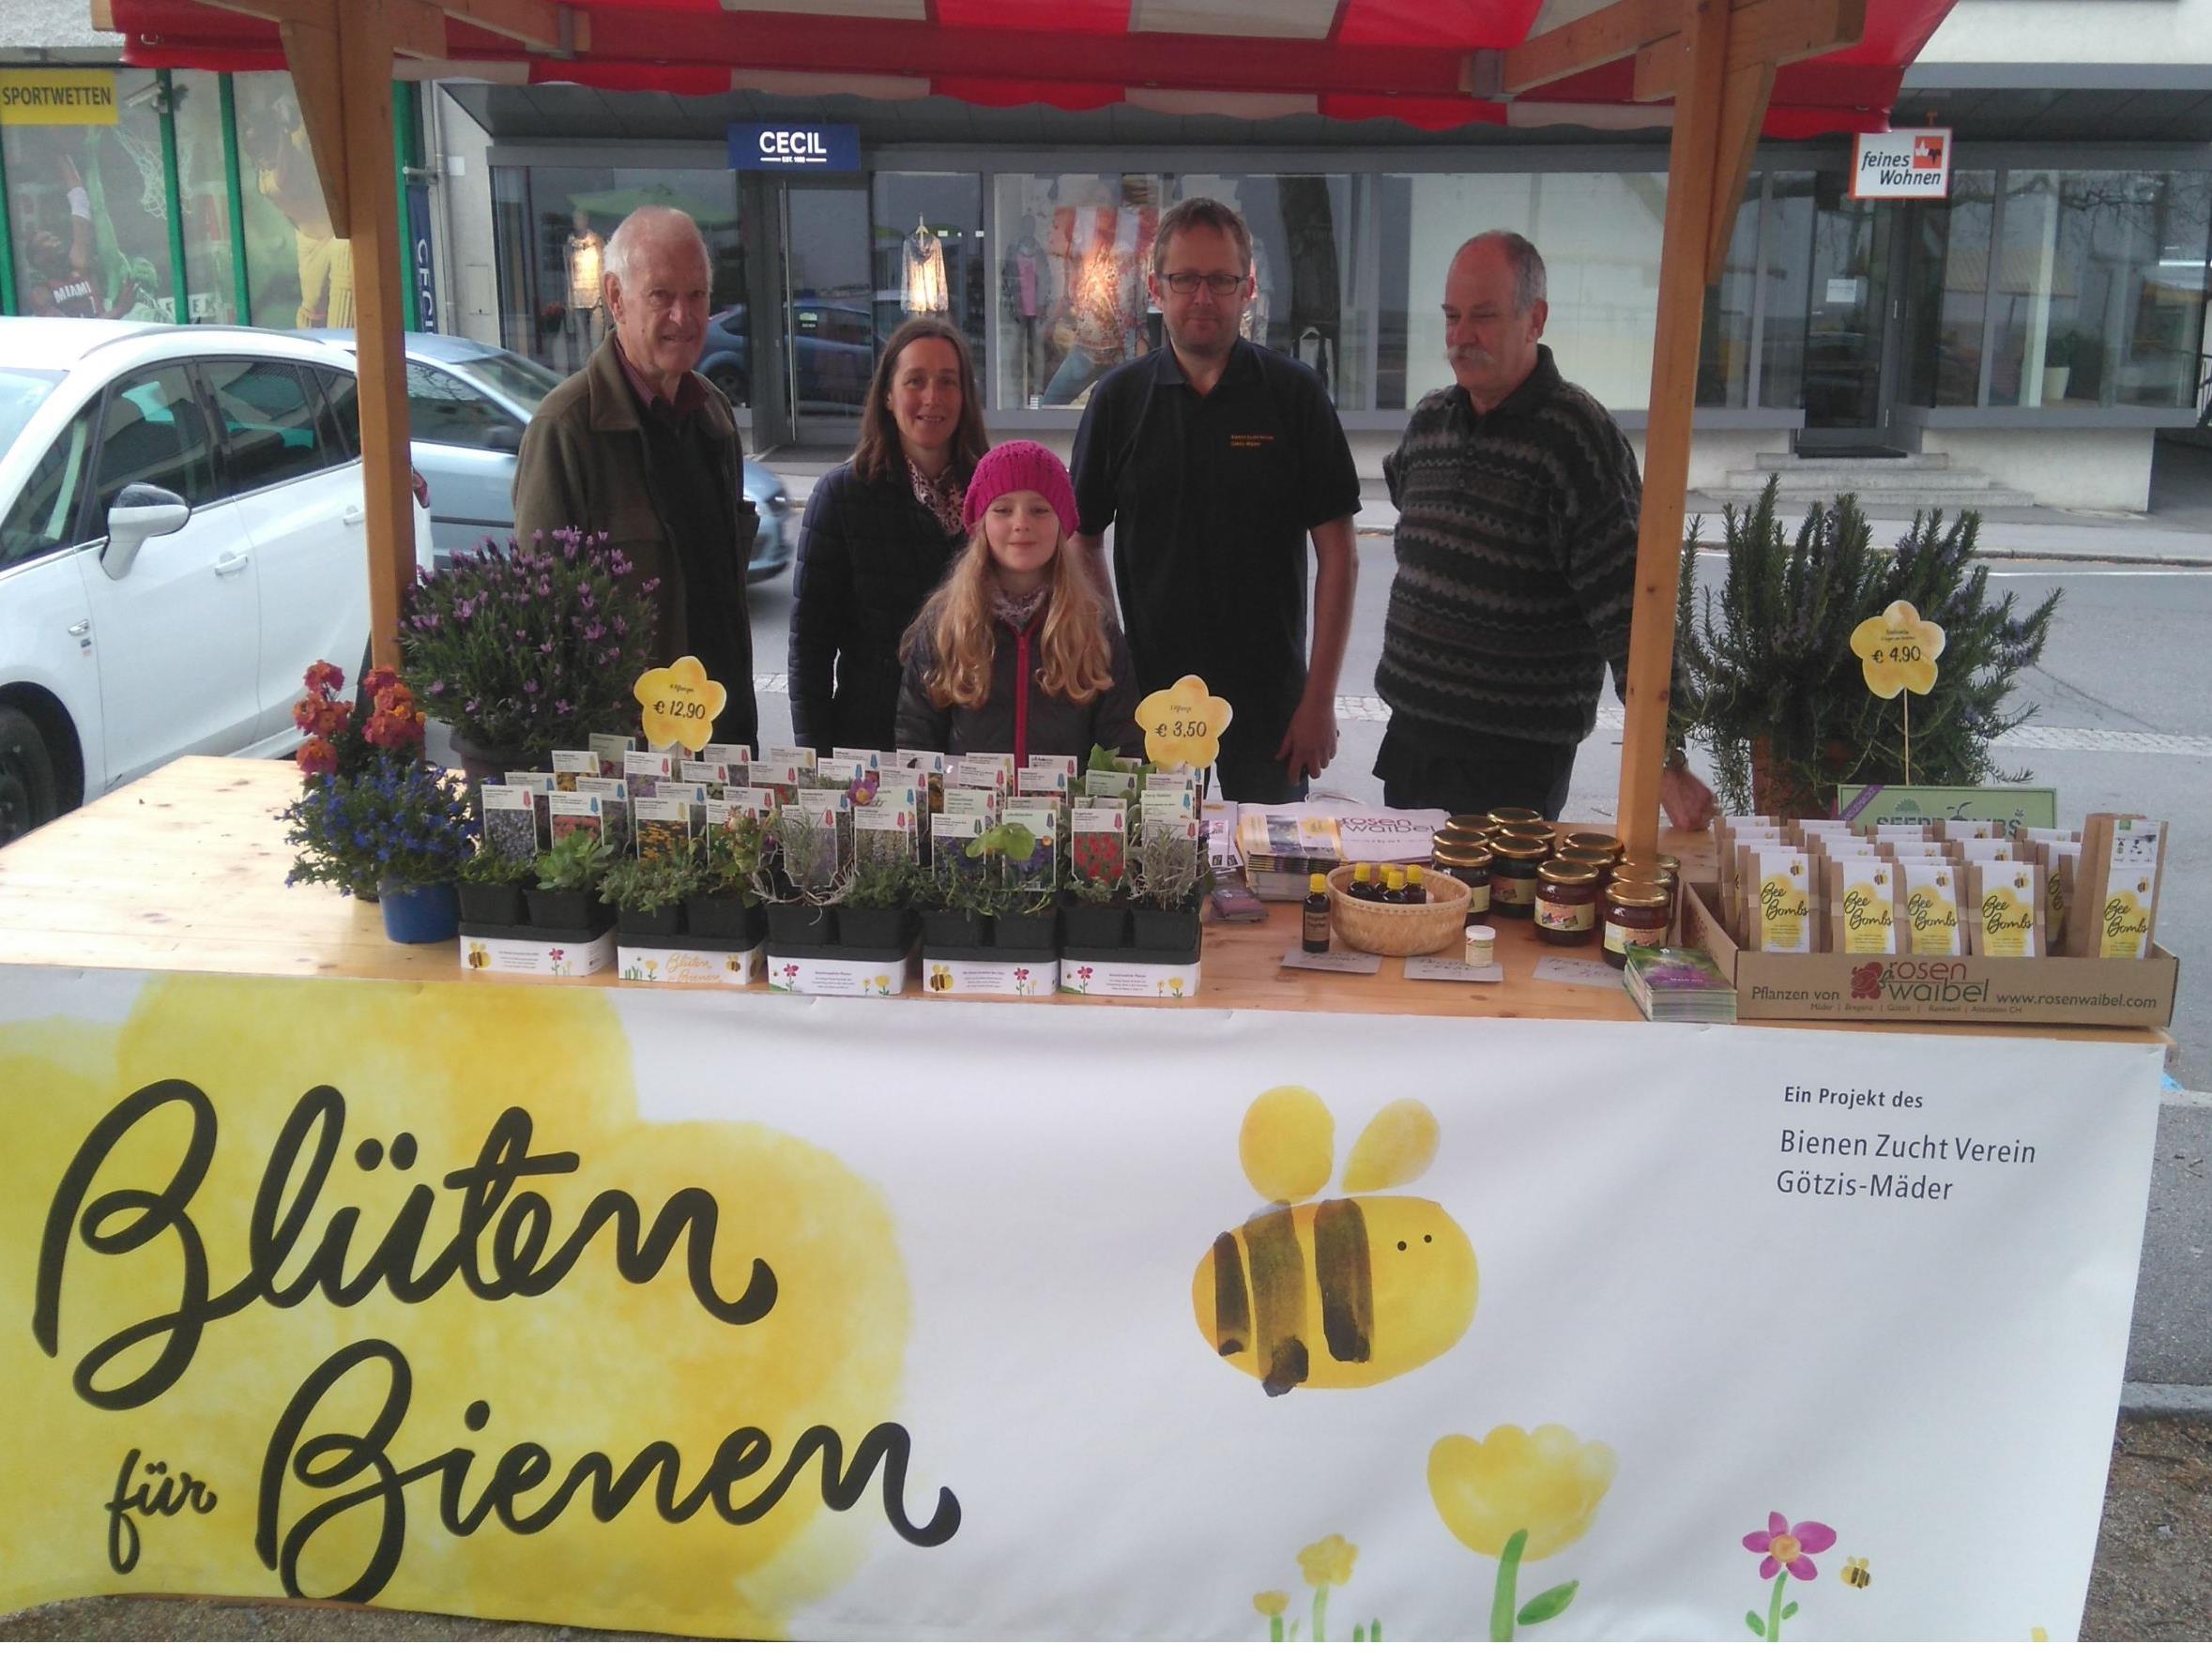 Mit der Aktion "Blüten für Bienen" war der BZV auch am Markt vertreten